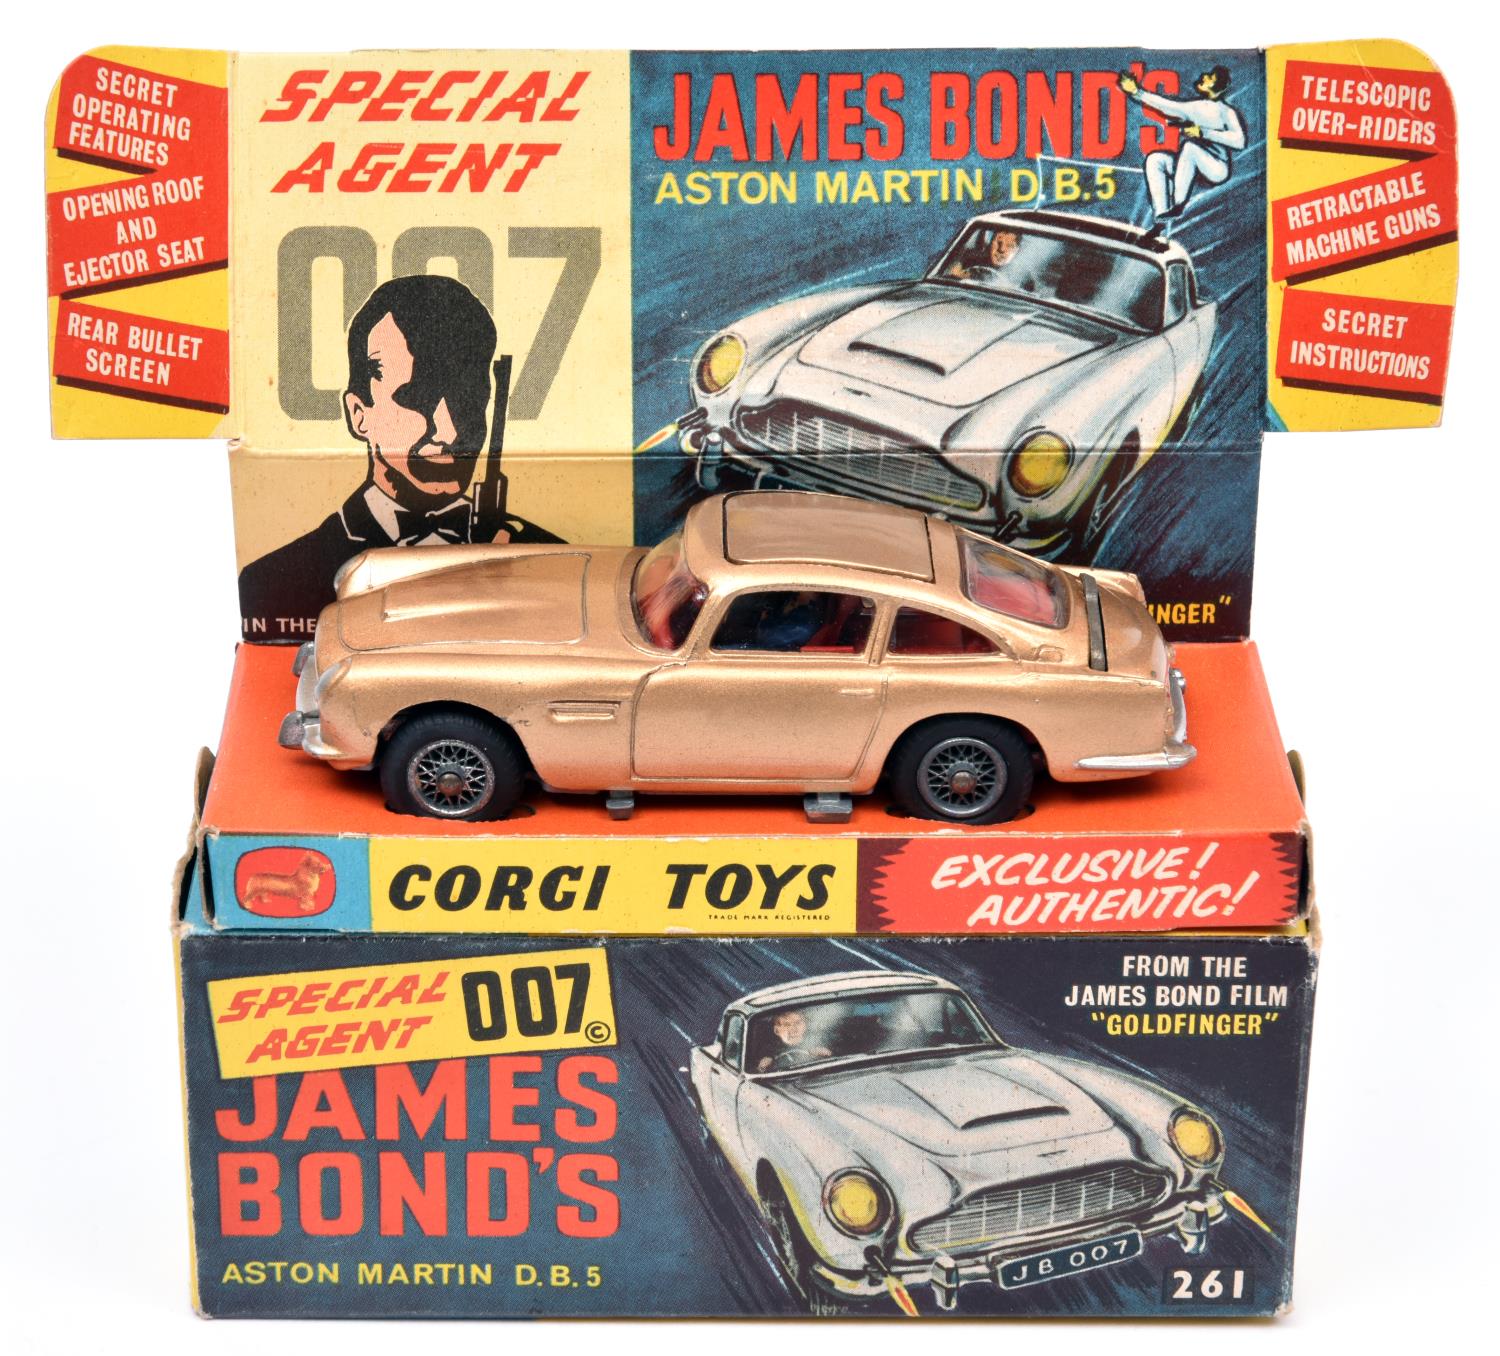 Corgi Toys James Bond's Aston Martin D.B.5 'From The James Bond Film 'Goldfinger'' (261). In